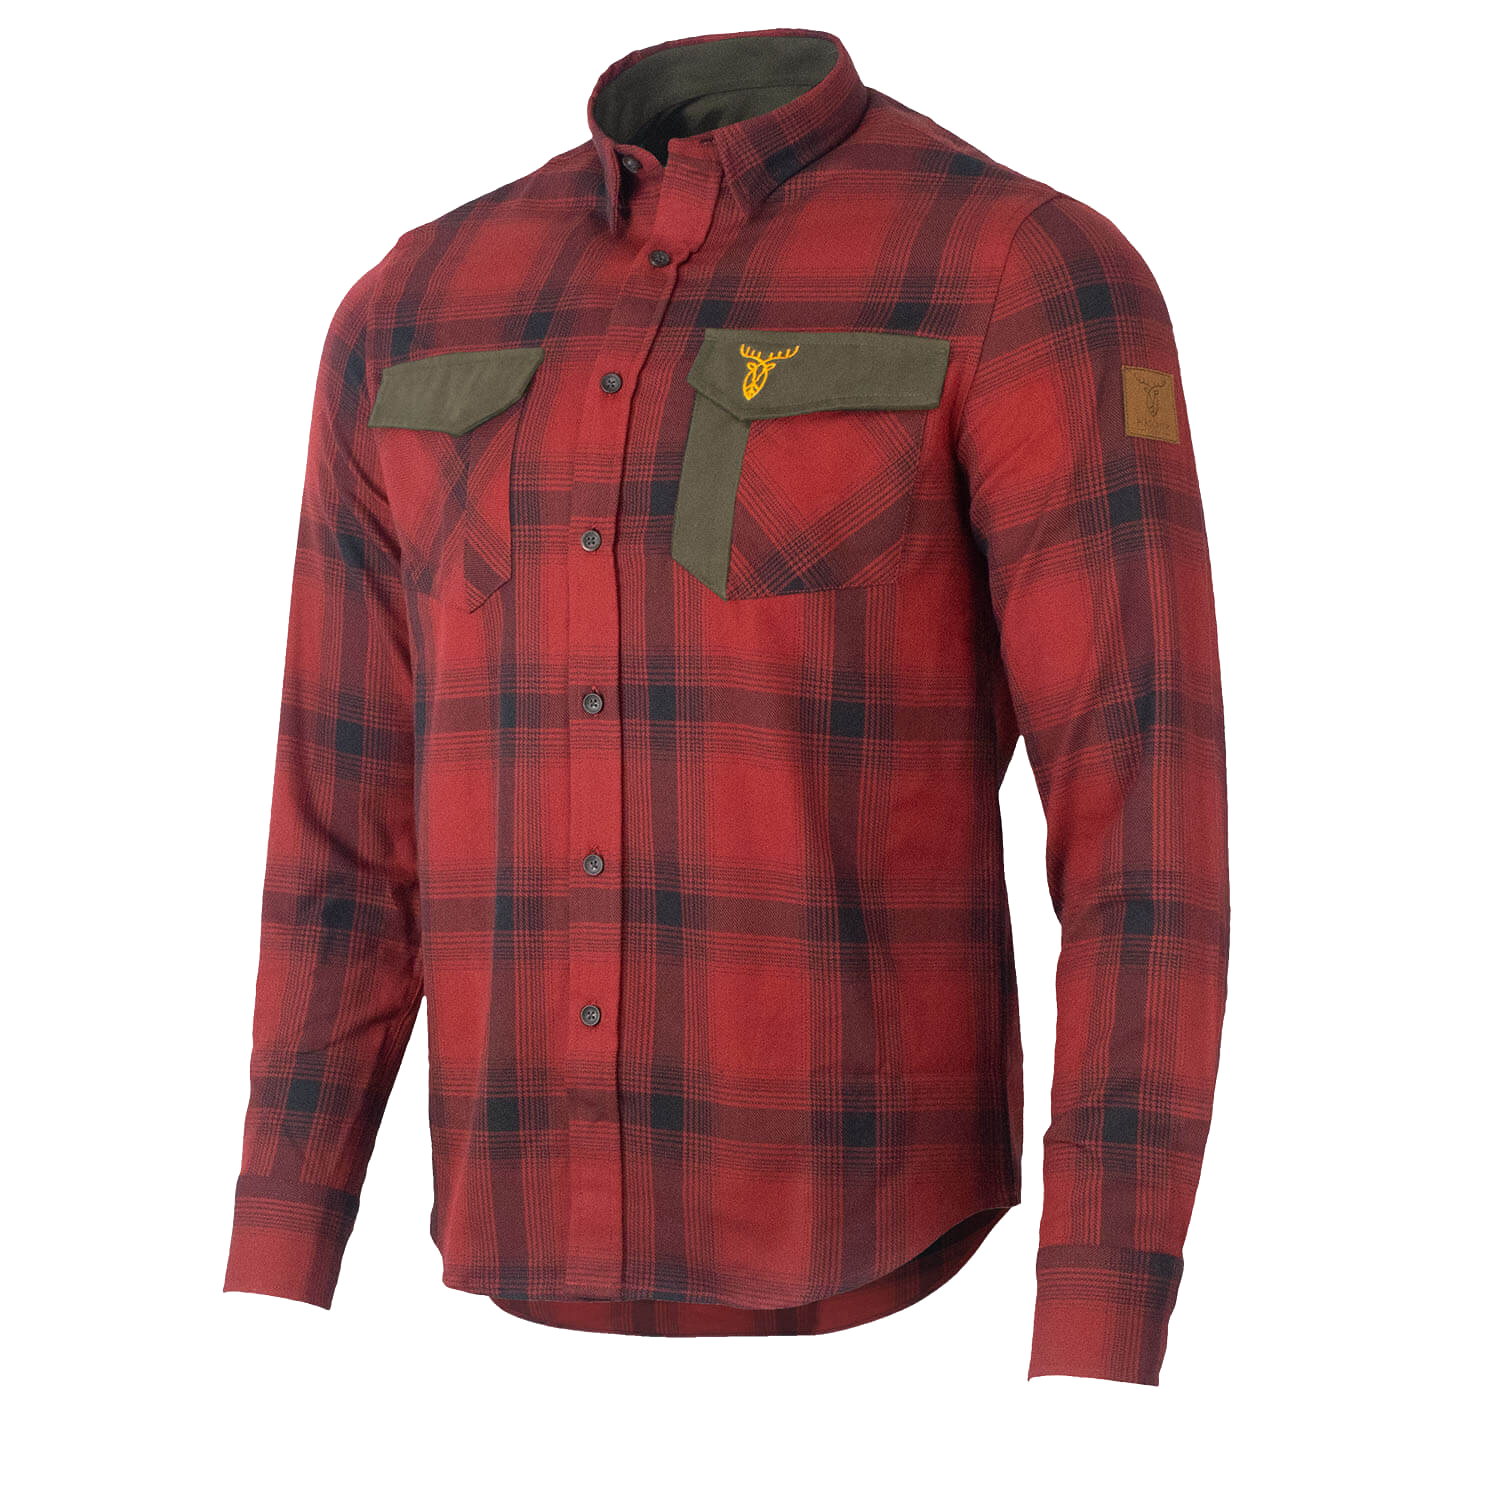  Pirscher Gear Bos overhemd (Vuurrood)